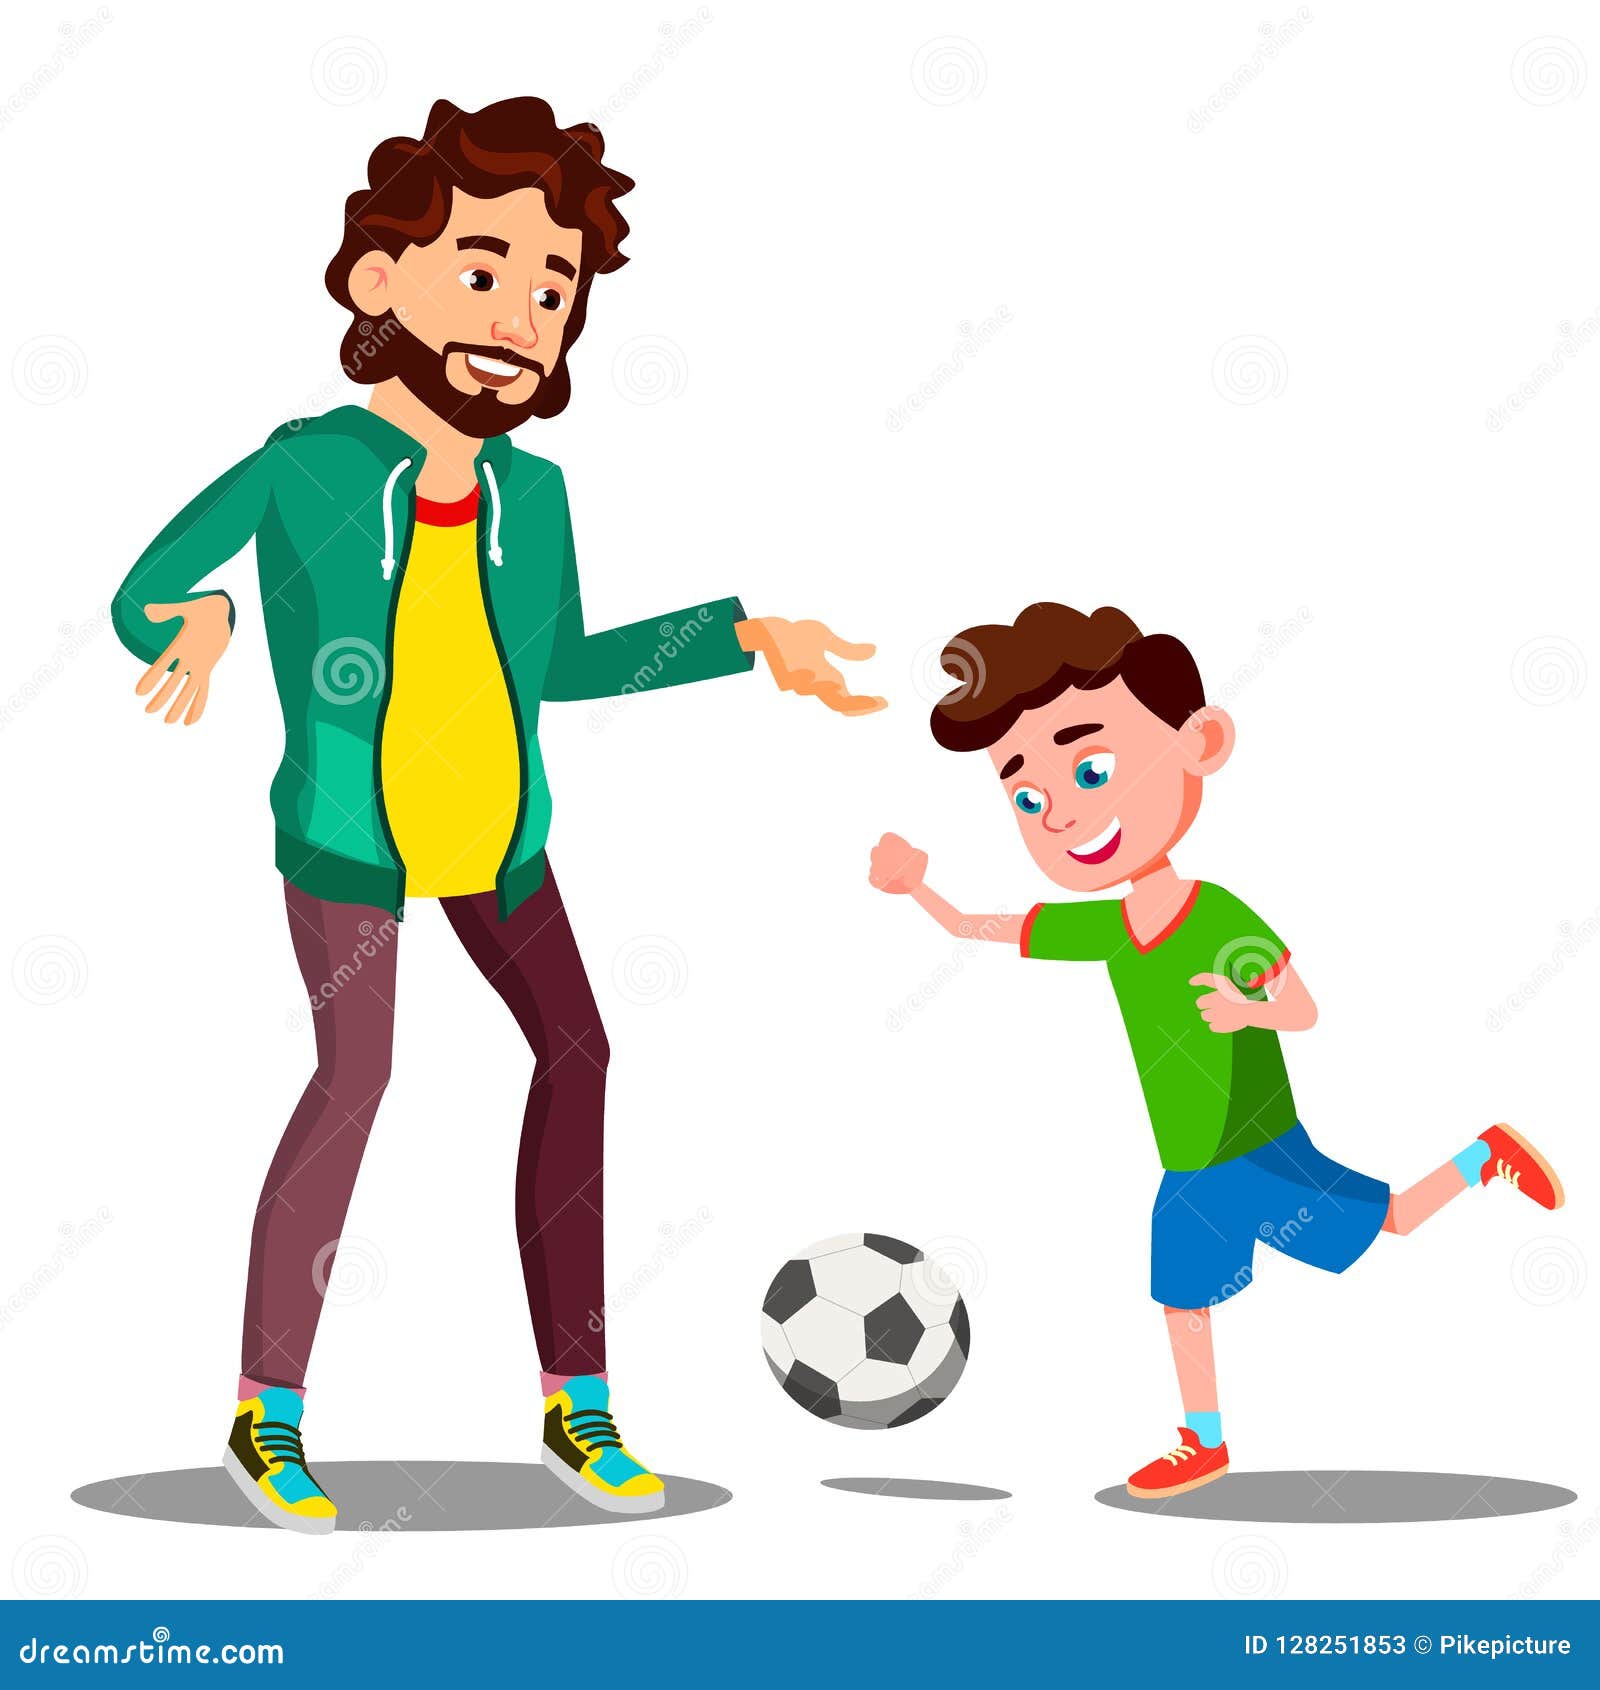 Папа играет в футбол. Папа с ребенком играют в футбол. Папа с сыном играют в футбол рисунок. Детские картинки игра в футбол с папой.